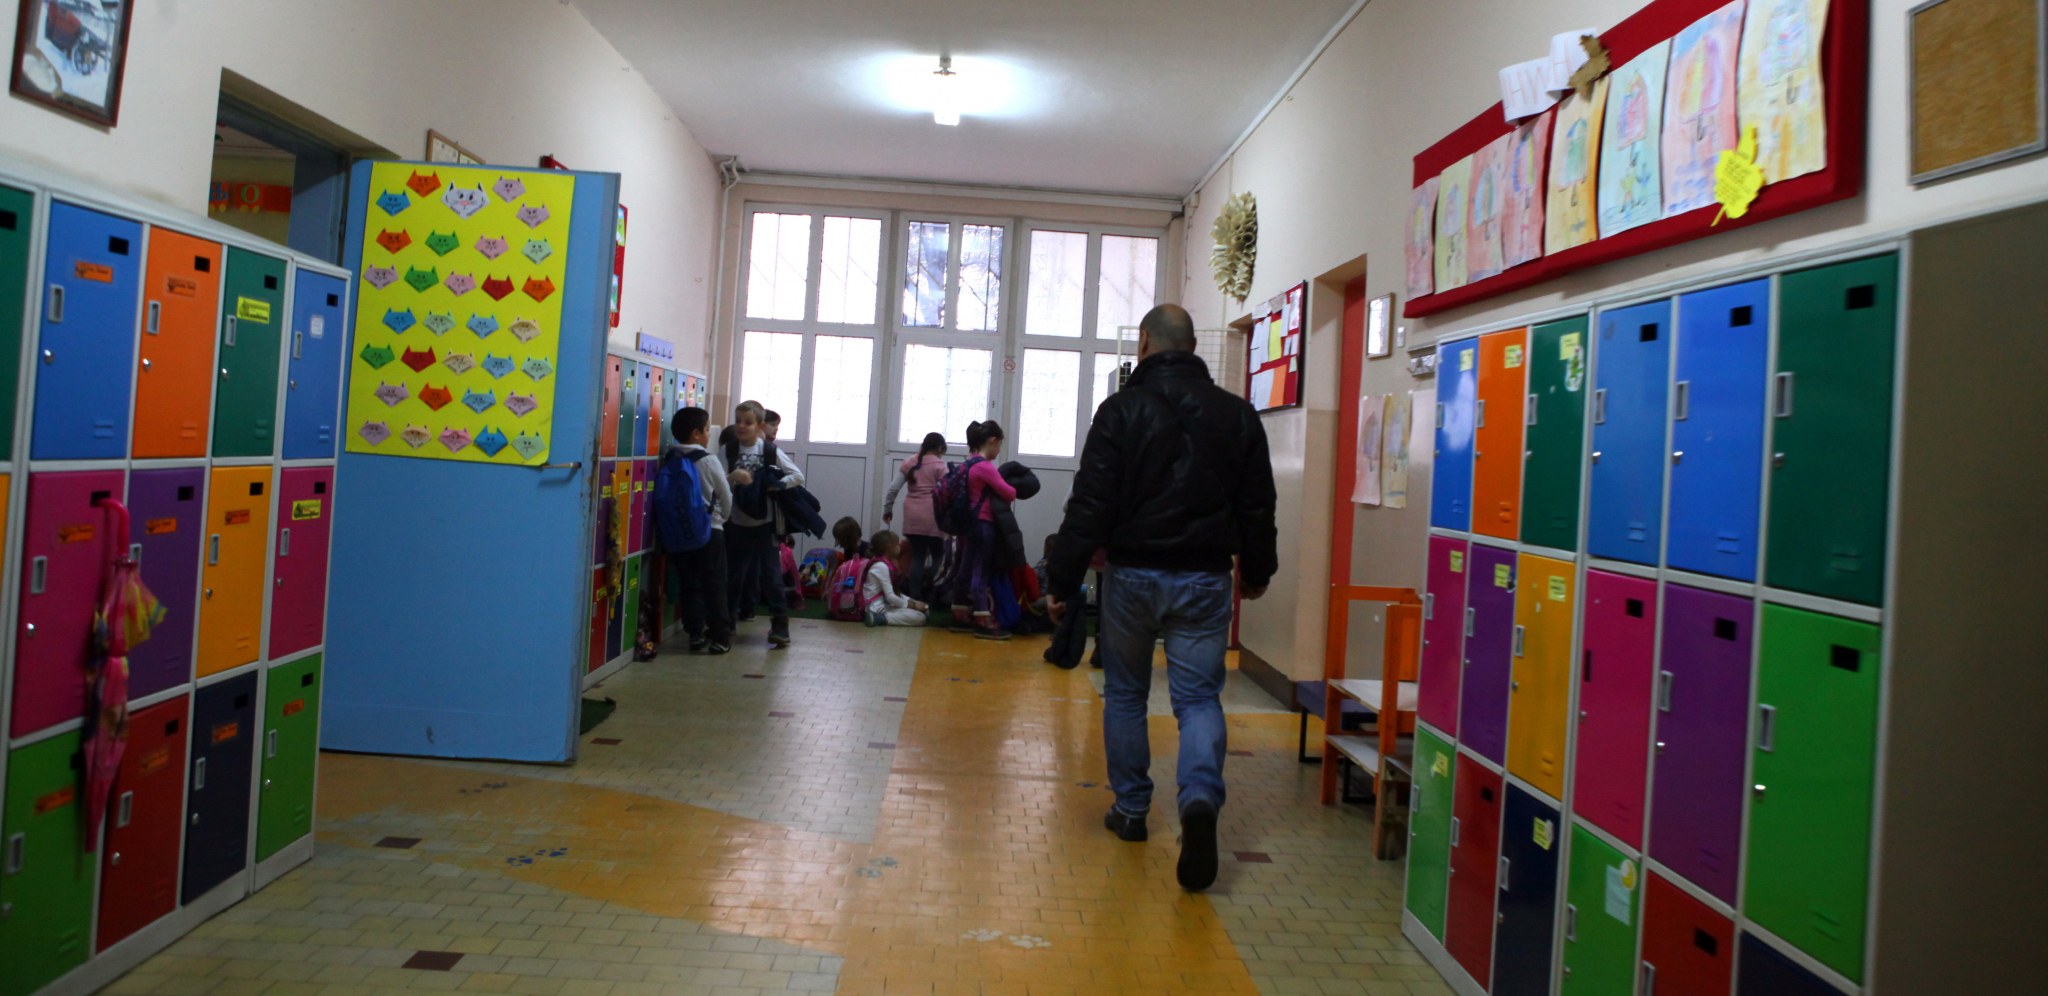 "DETONIRAĆE SE AKO JE POTRAŽITE" Škola u Novom Pazaru dobila jezivu dojavu - blokirano celo naselje